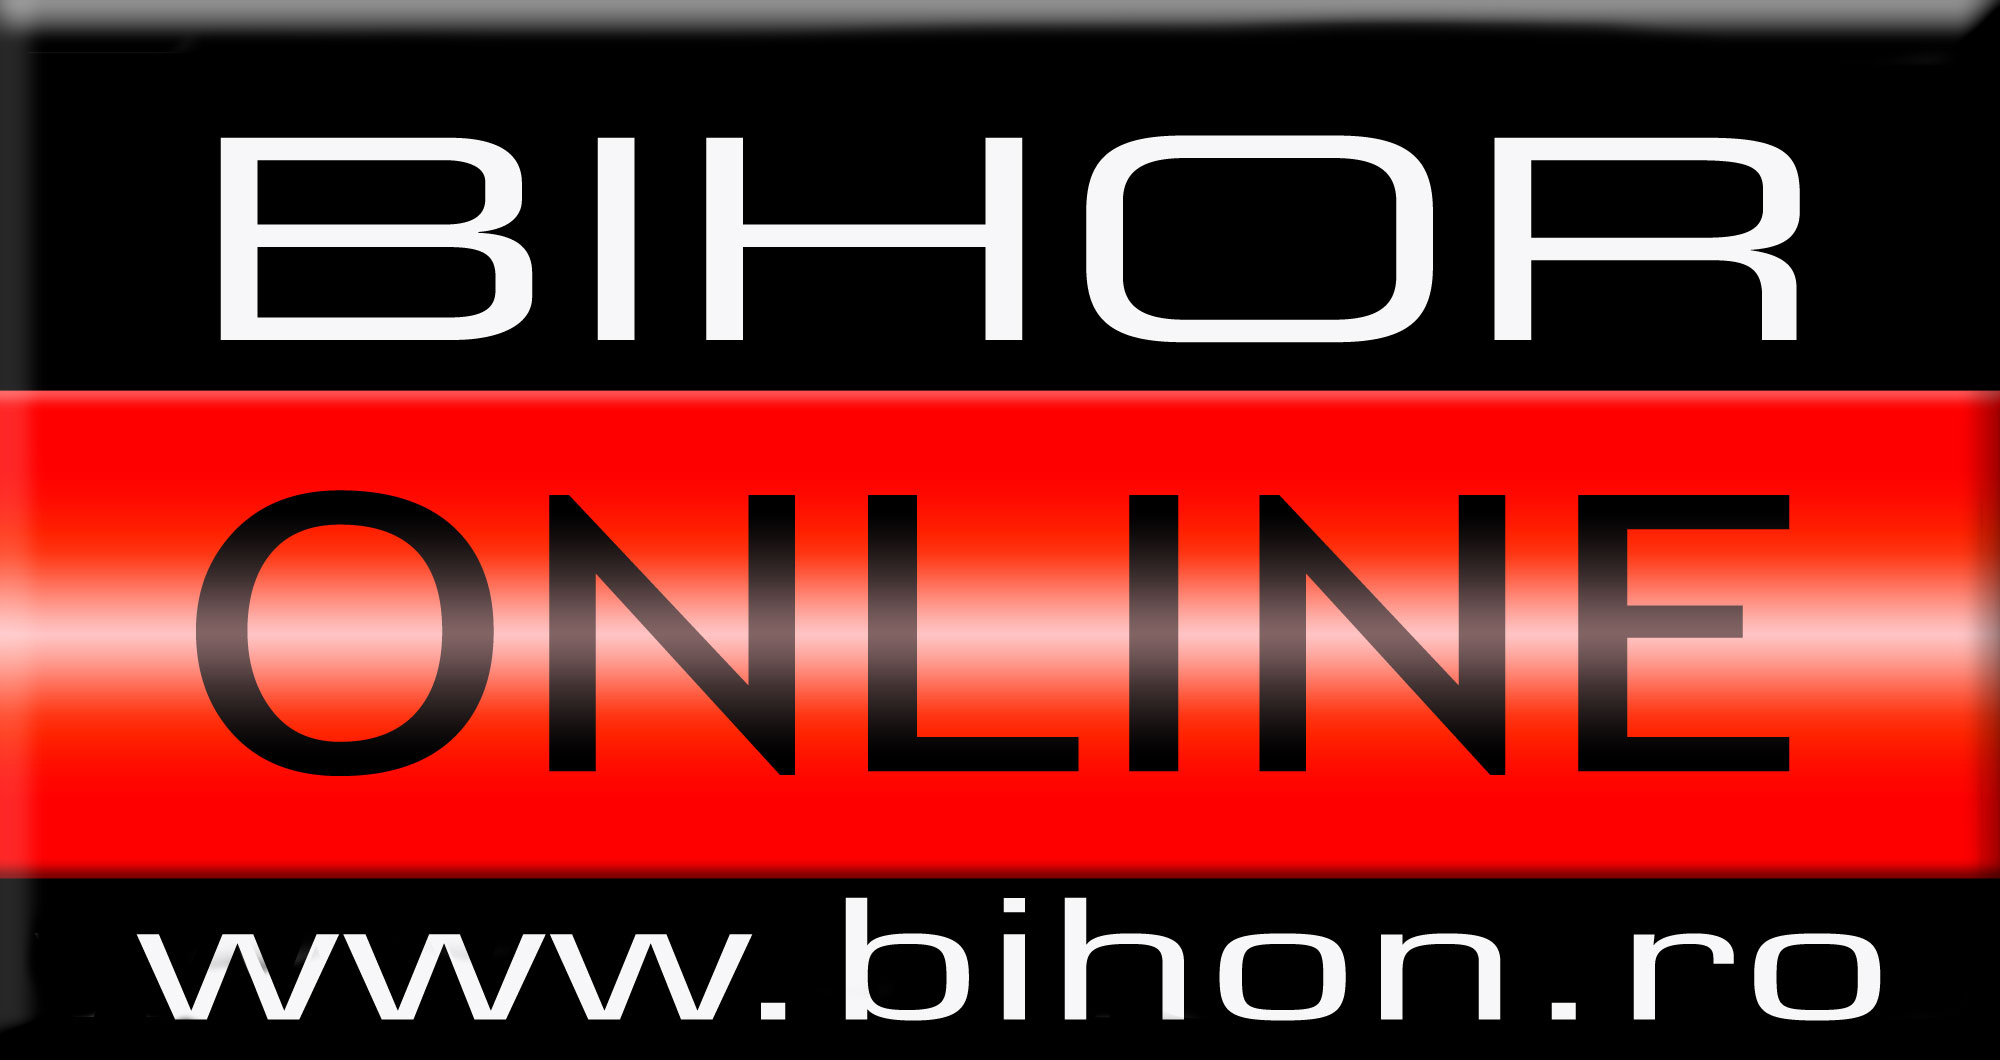 Bihor Online